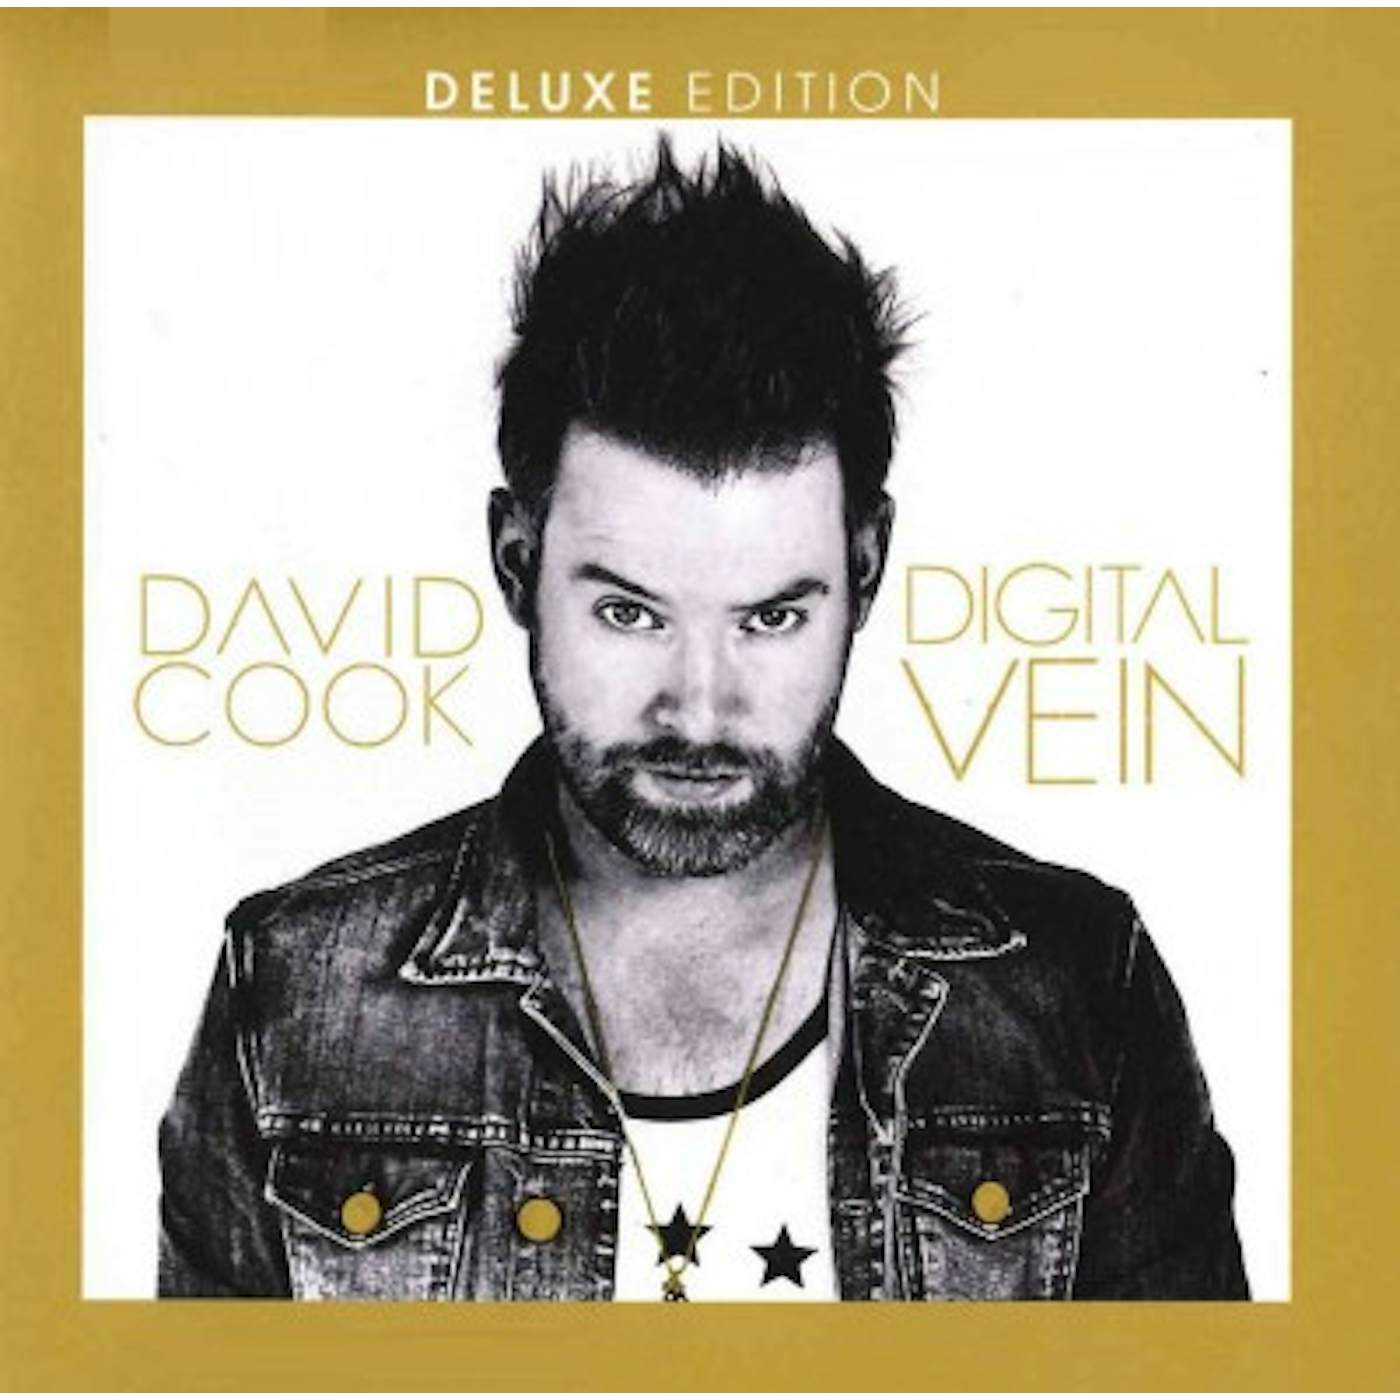 David Cook Digital Vein (Deluxe Edition) CD